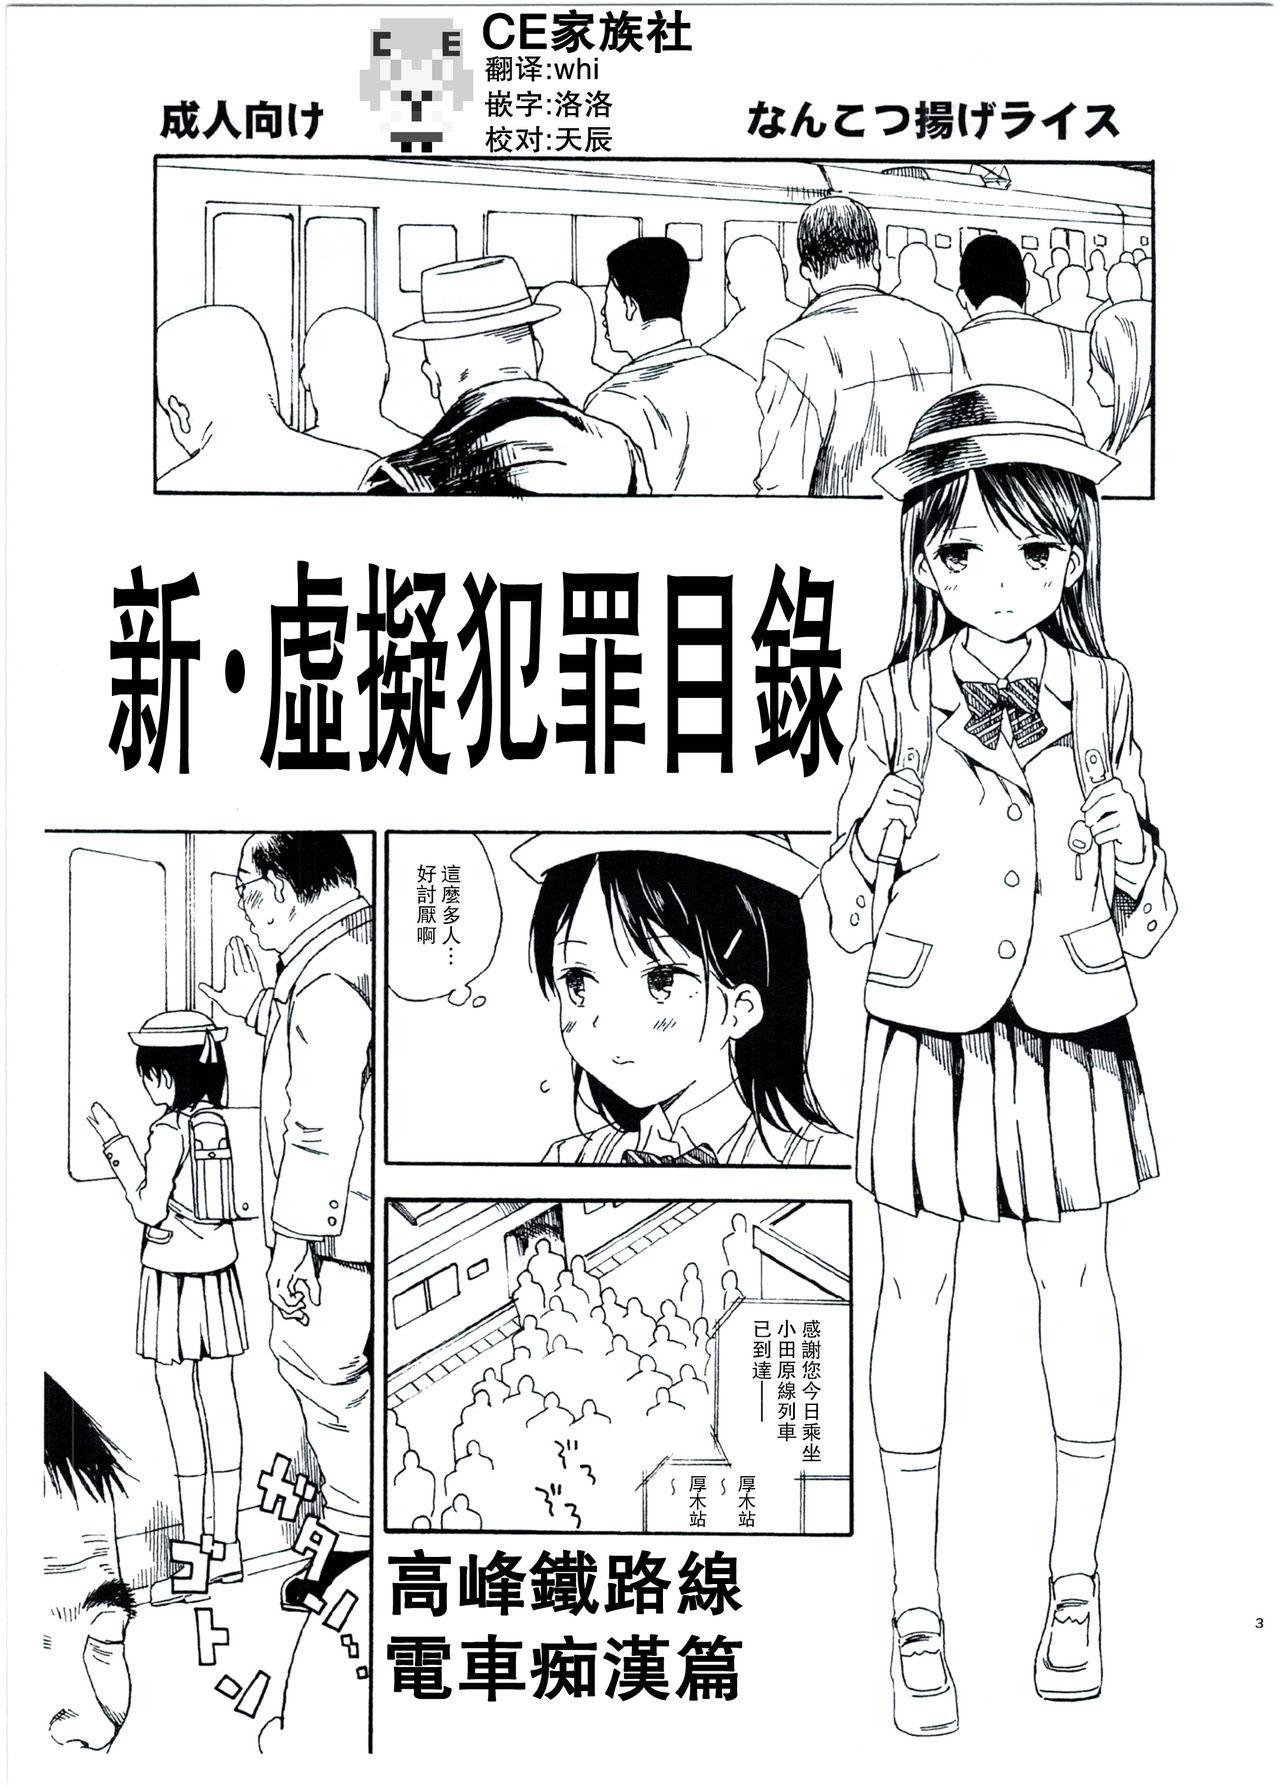 Stockings Shin Hijitsuzai Hanzai Mokuroku Mansai Zairaisen Chikan Densha Hen Trans - Page 1